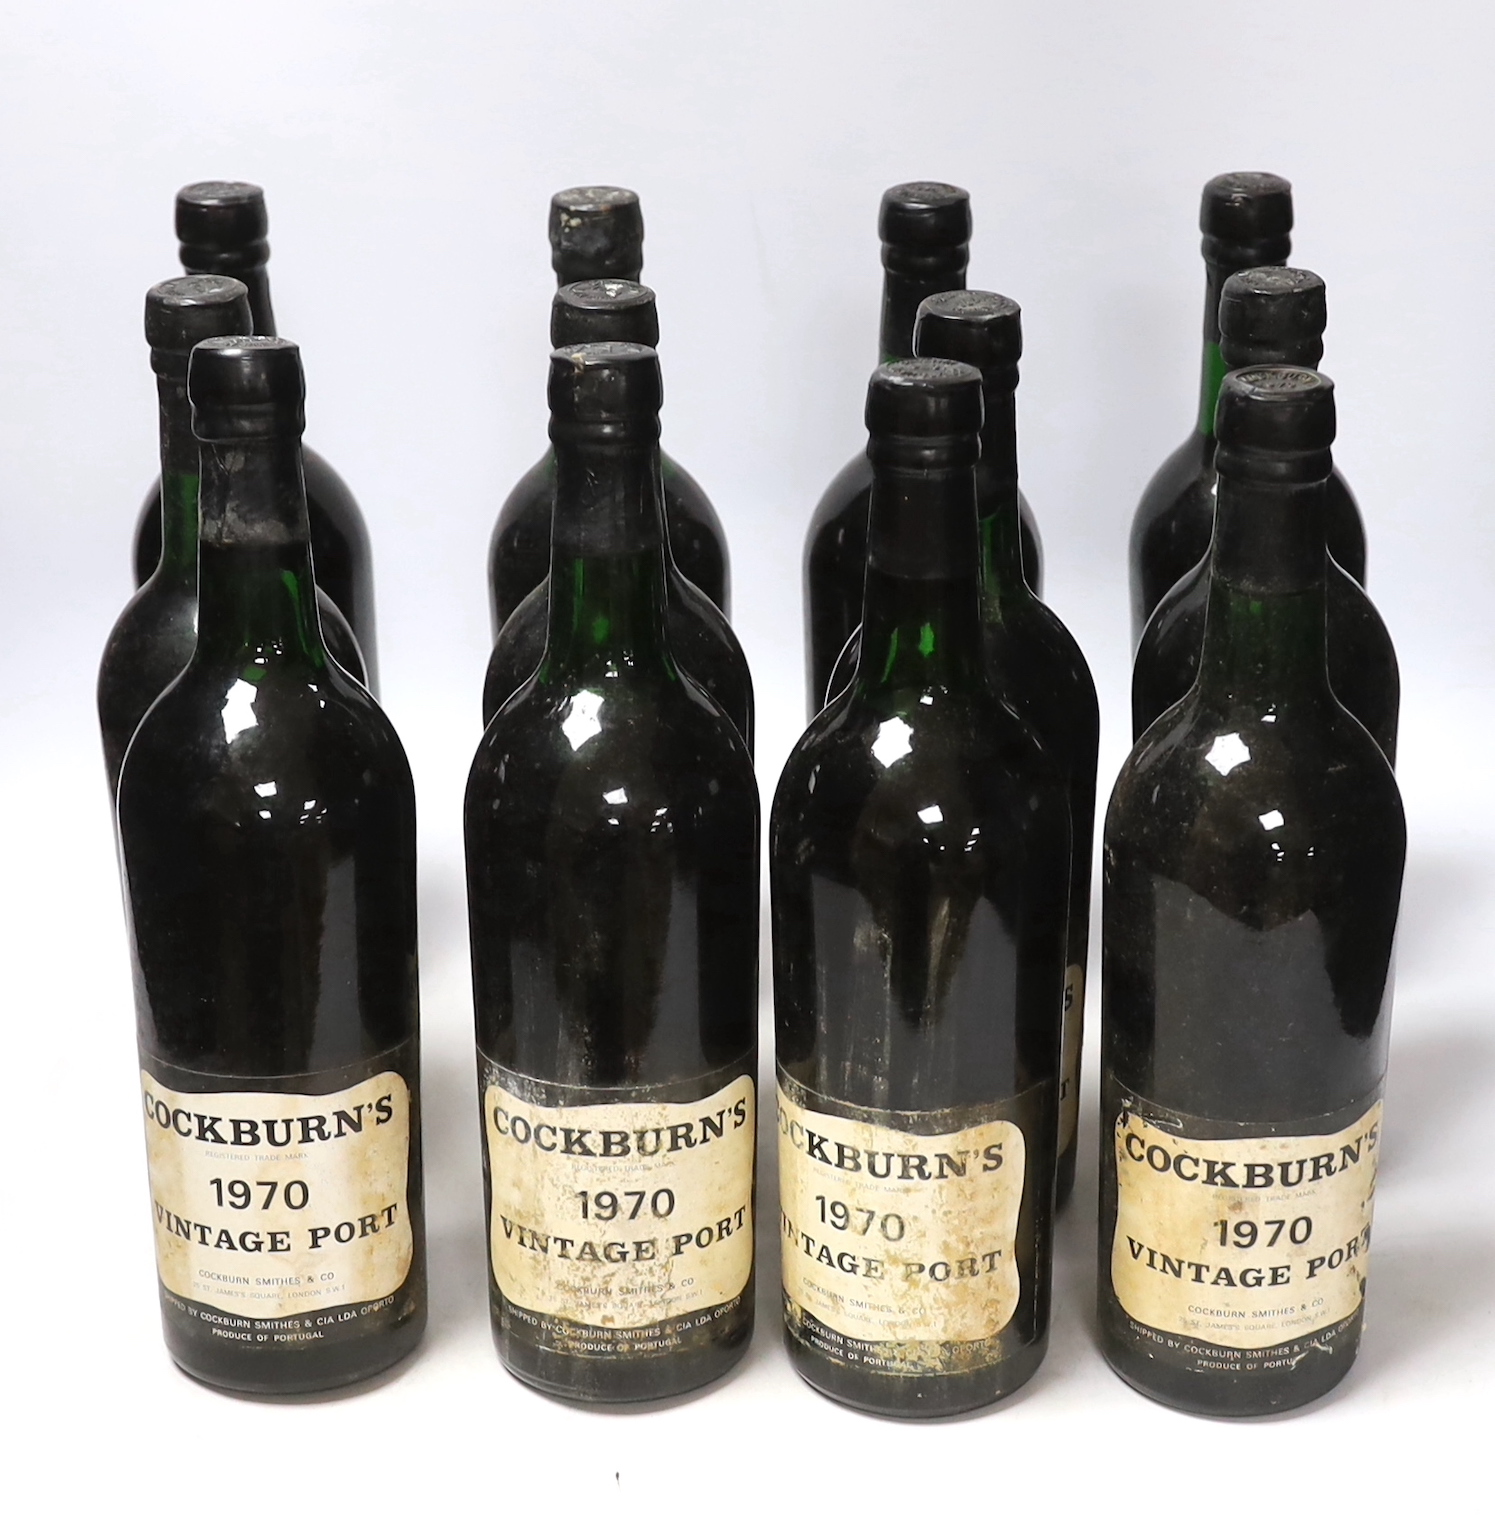 Twelve bottles of Cockburns vintage port, 1970